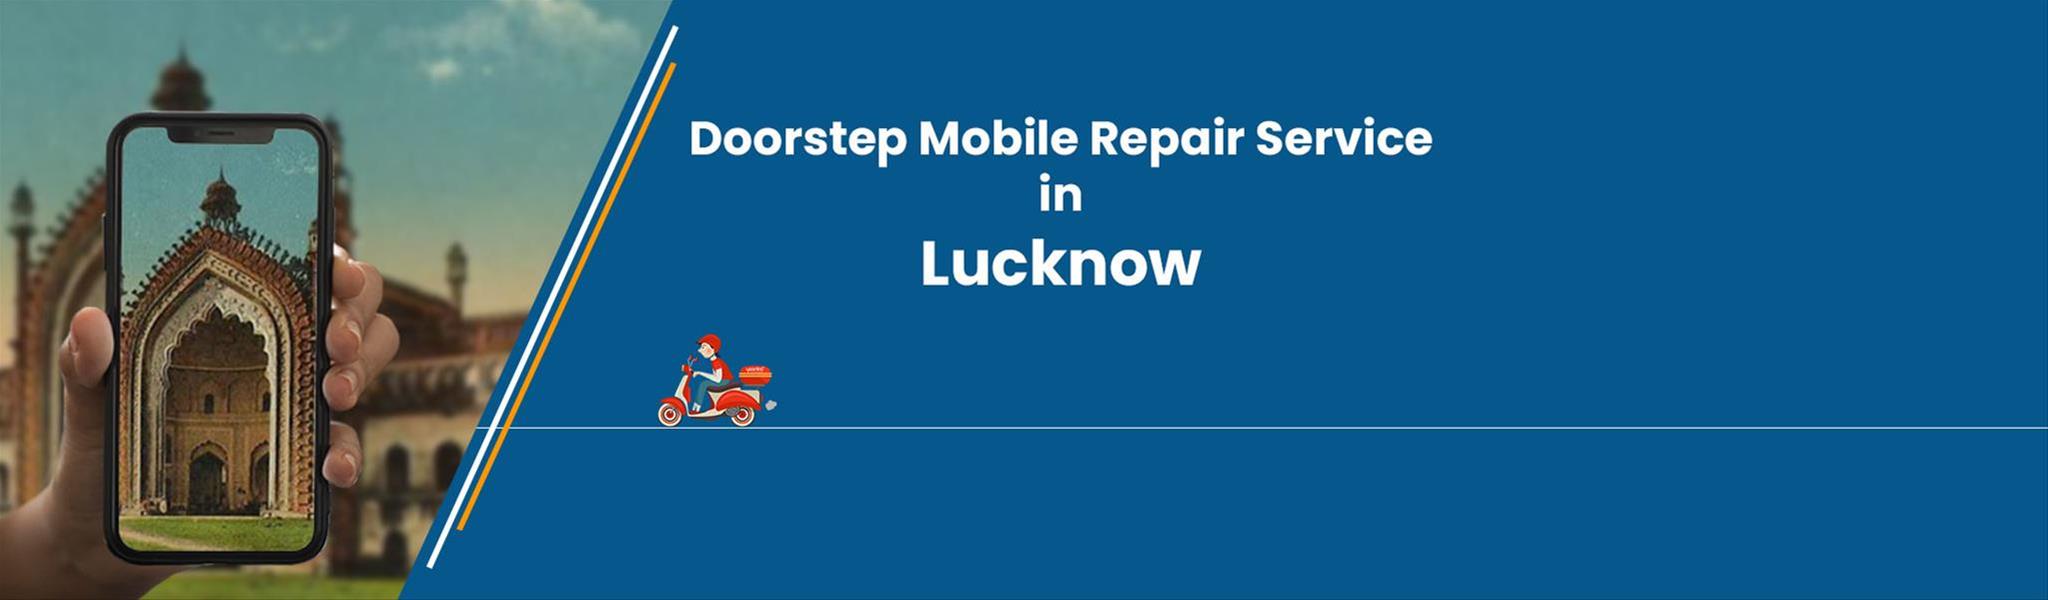 mobile-repair-lucknow.jpg